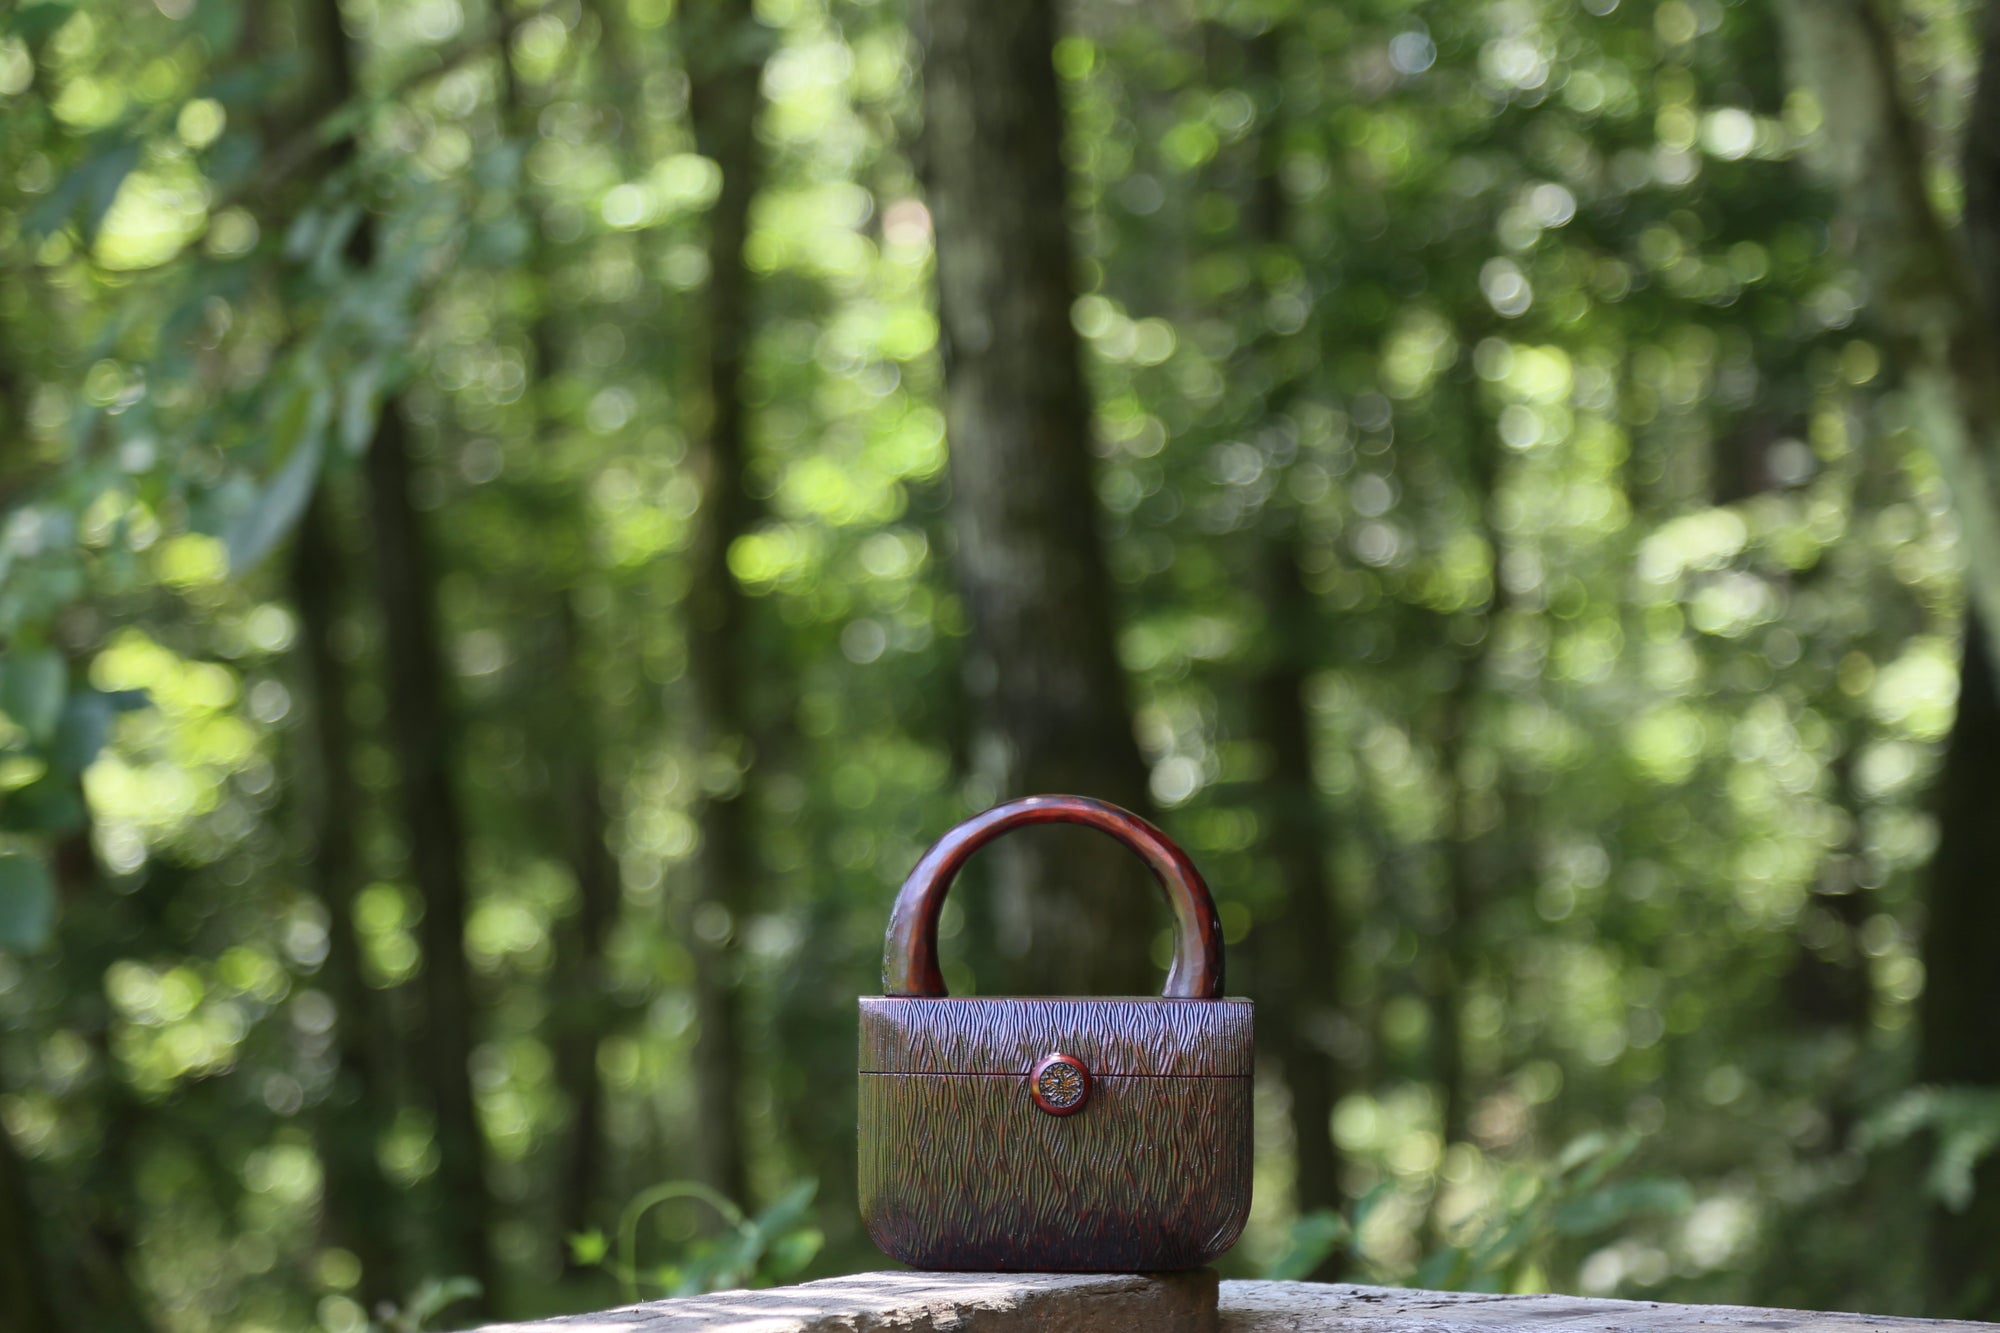 brown kinokaban (wooden bag) is in the forest scene